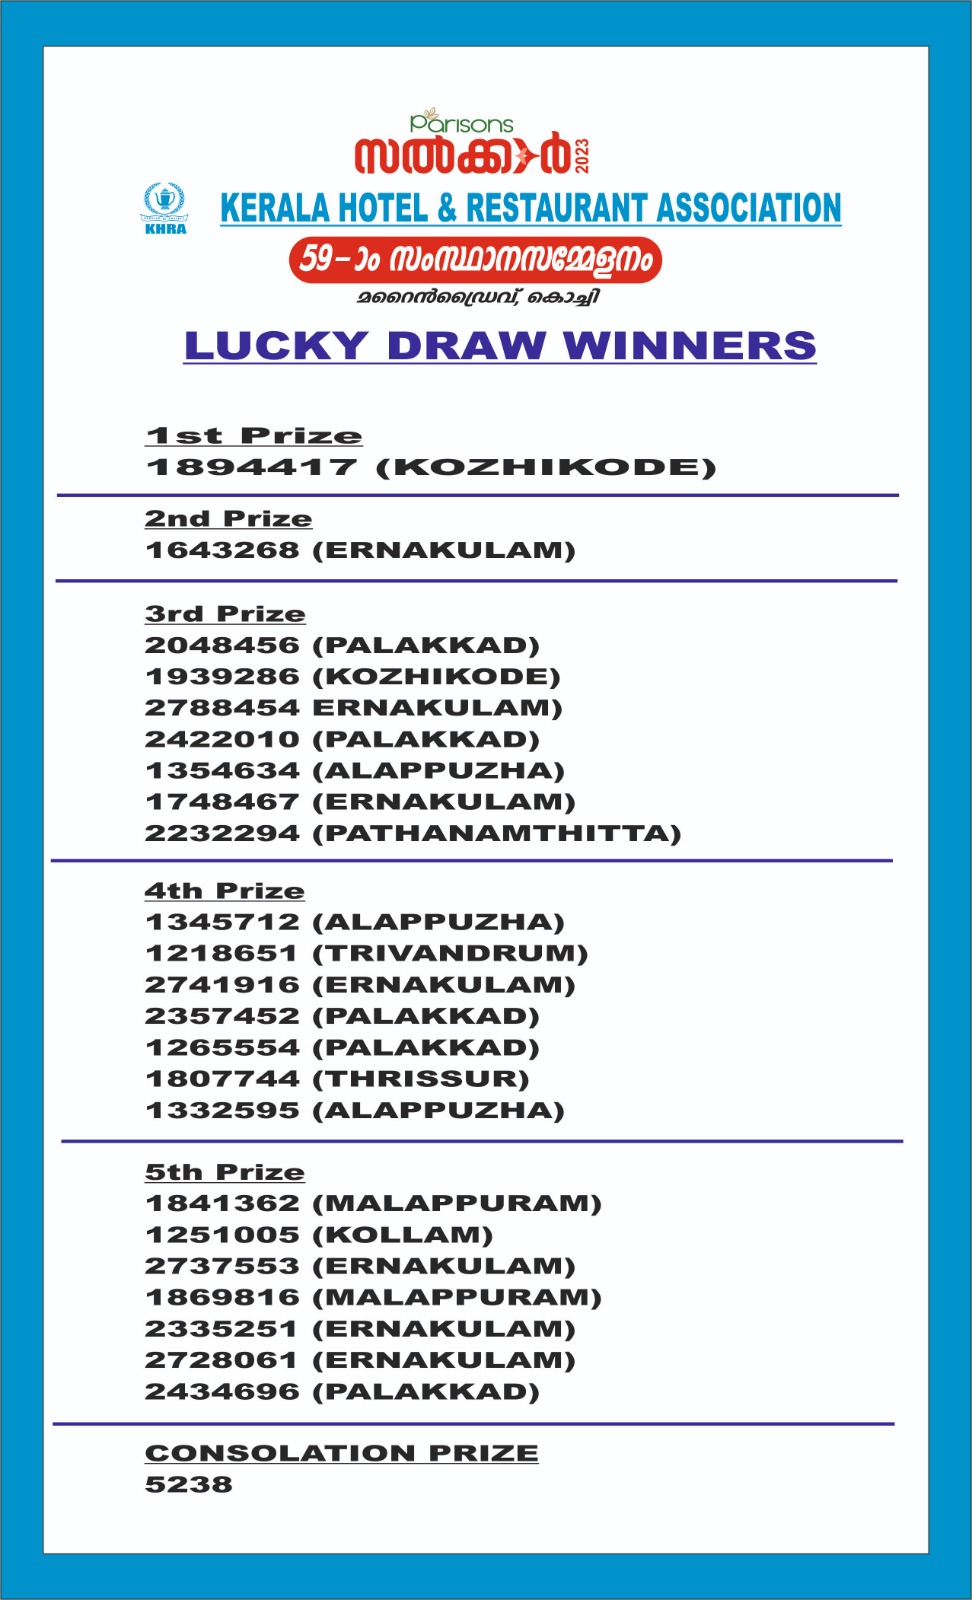 KHRA Salkkar 2023 Lucky Draw Winner List